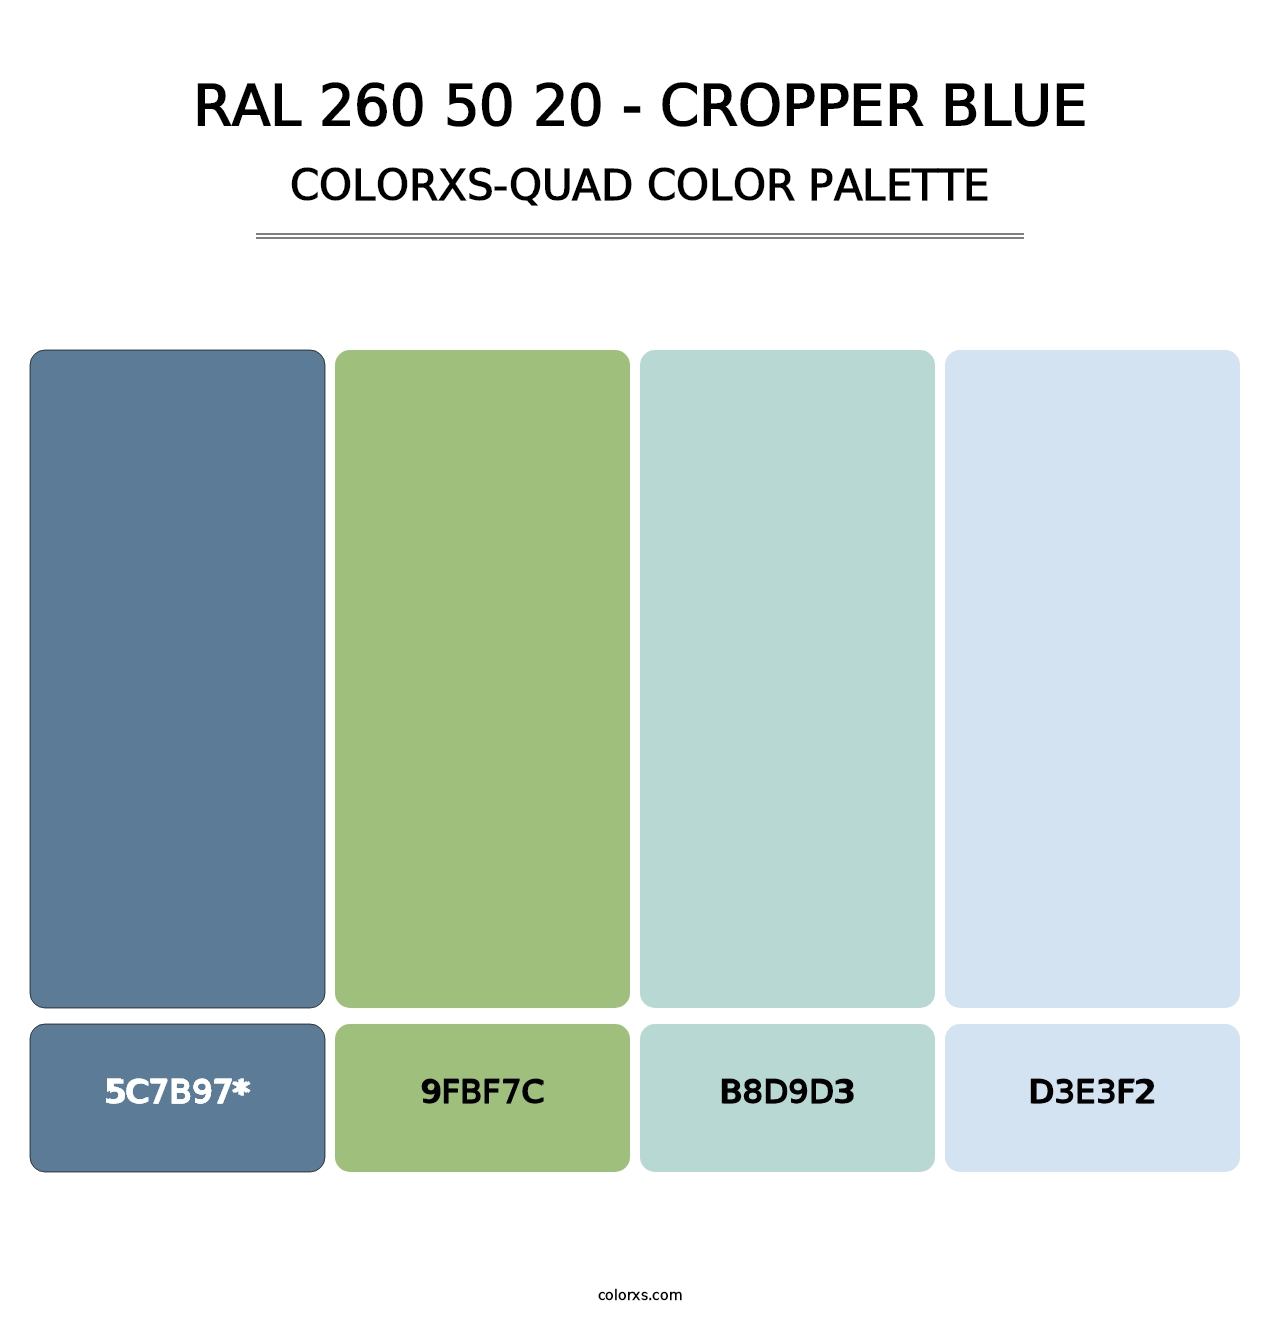 RAL 260 50 20 - Cropper Blue - Colorxs Quad Palette